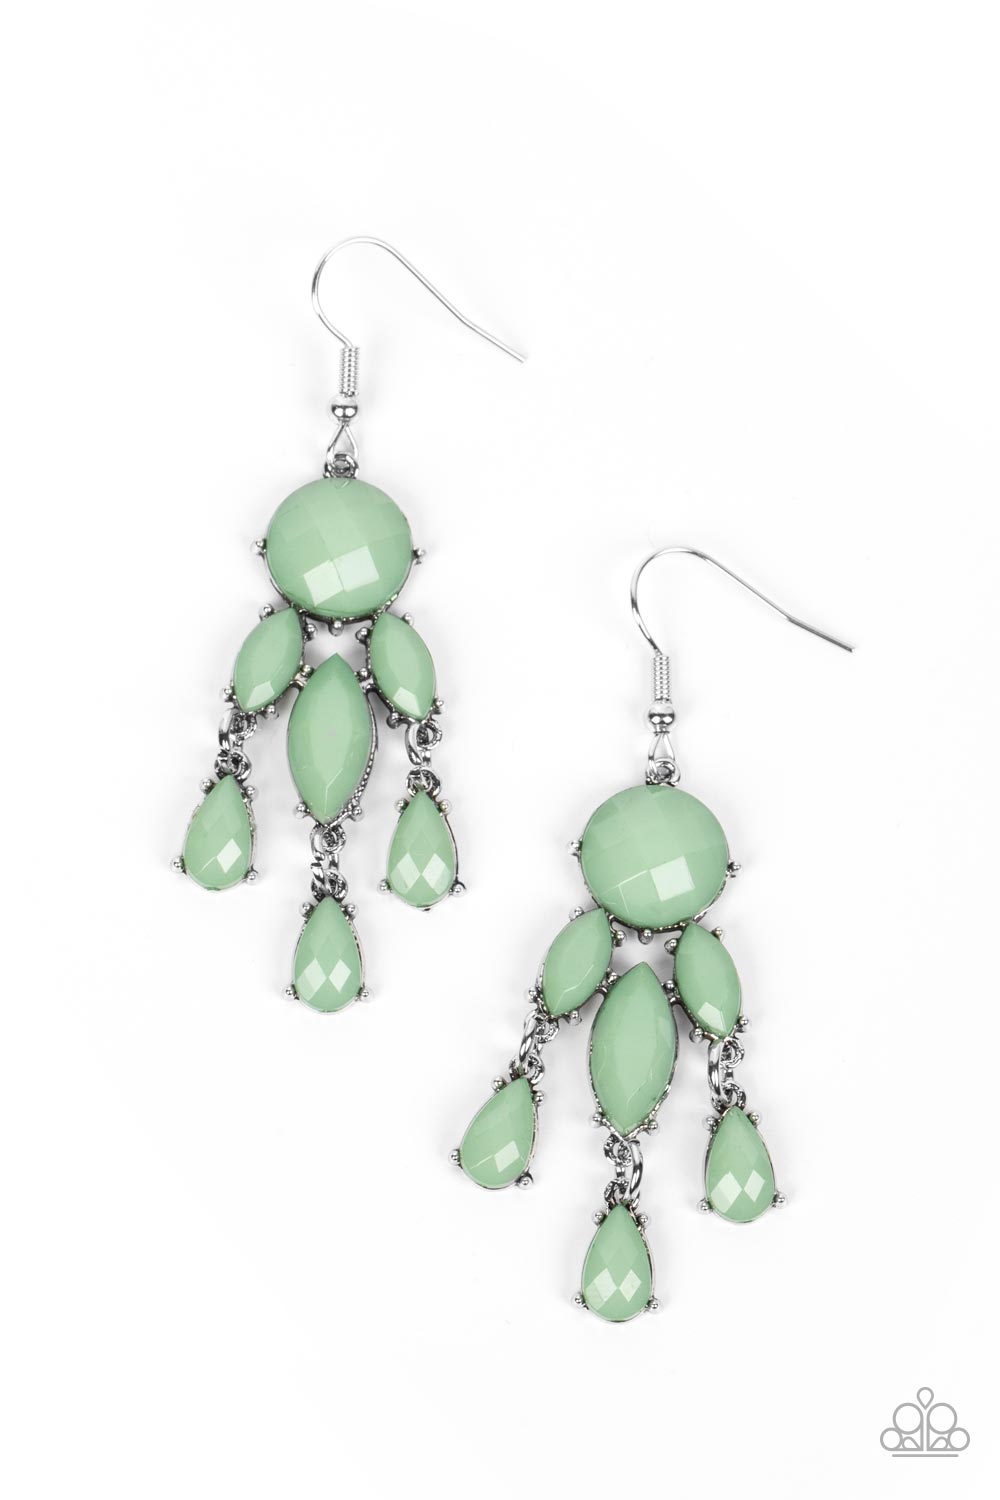 five-dollar-jewelry-summer-feeling-green-earrings-paparazzi-accessories